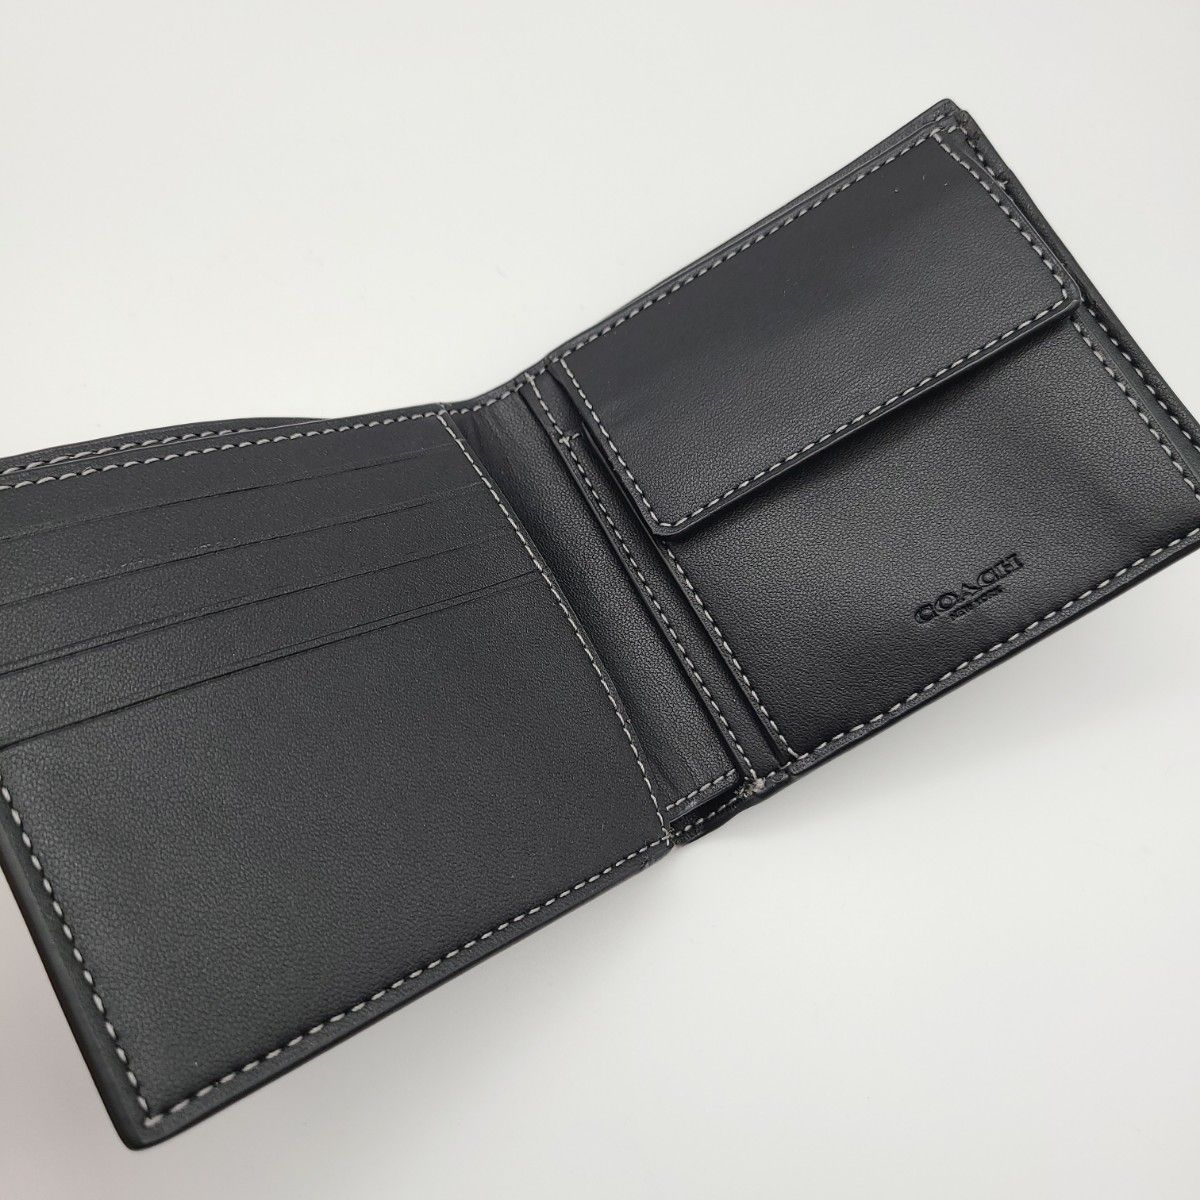 COACH 折り財布 新品 ブラック 最新作 限定品 レザー メンズ 二つ折り財布